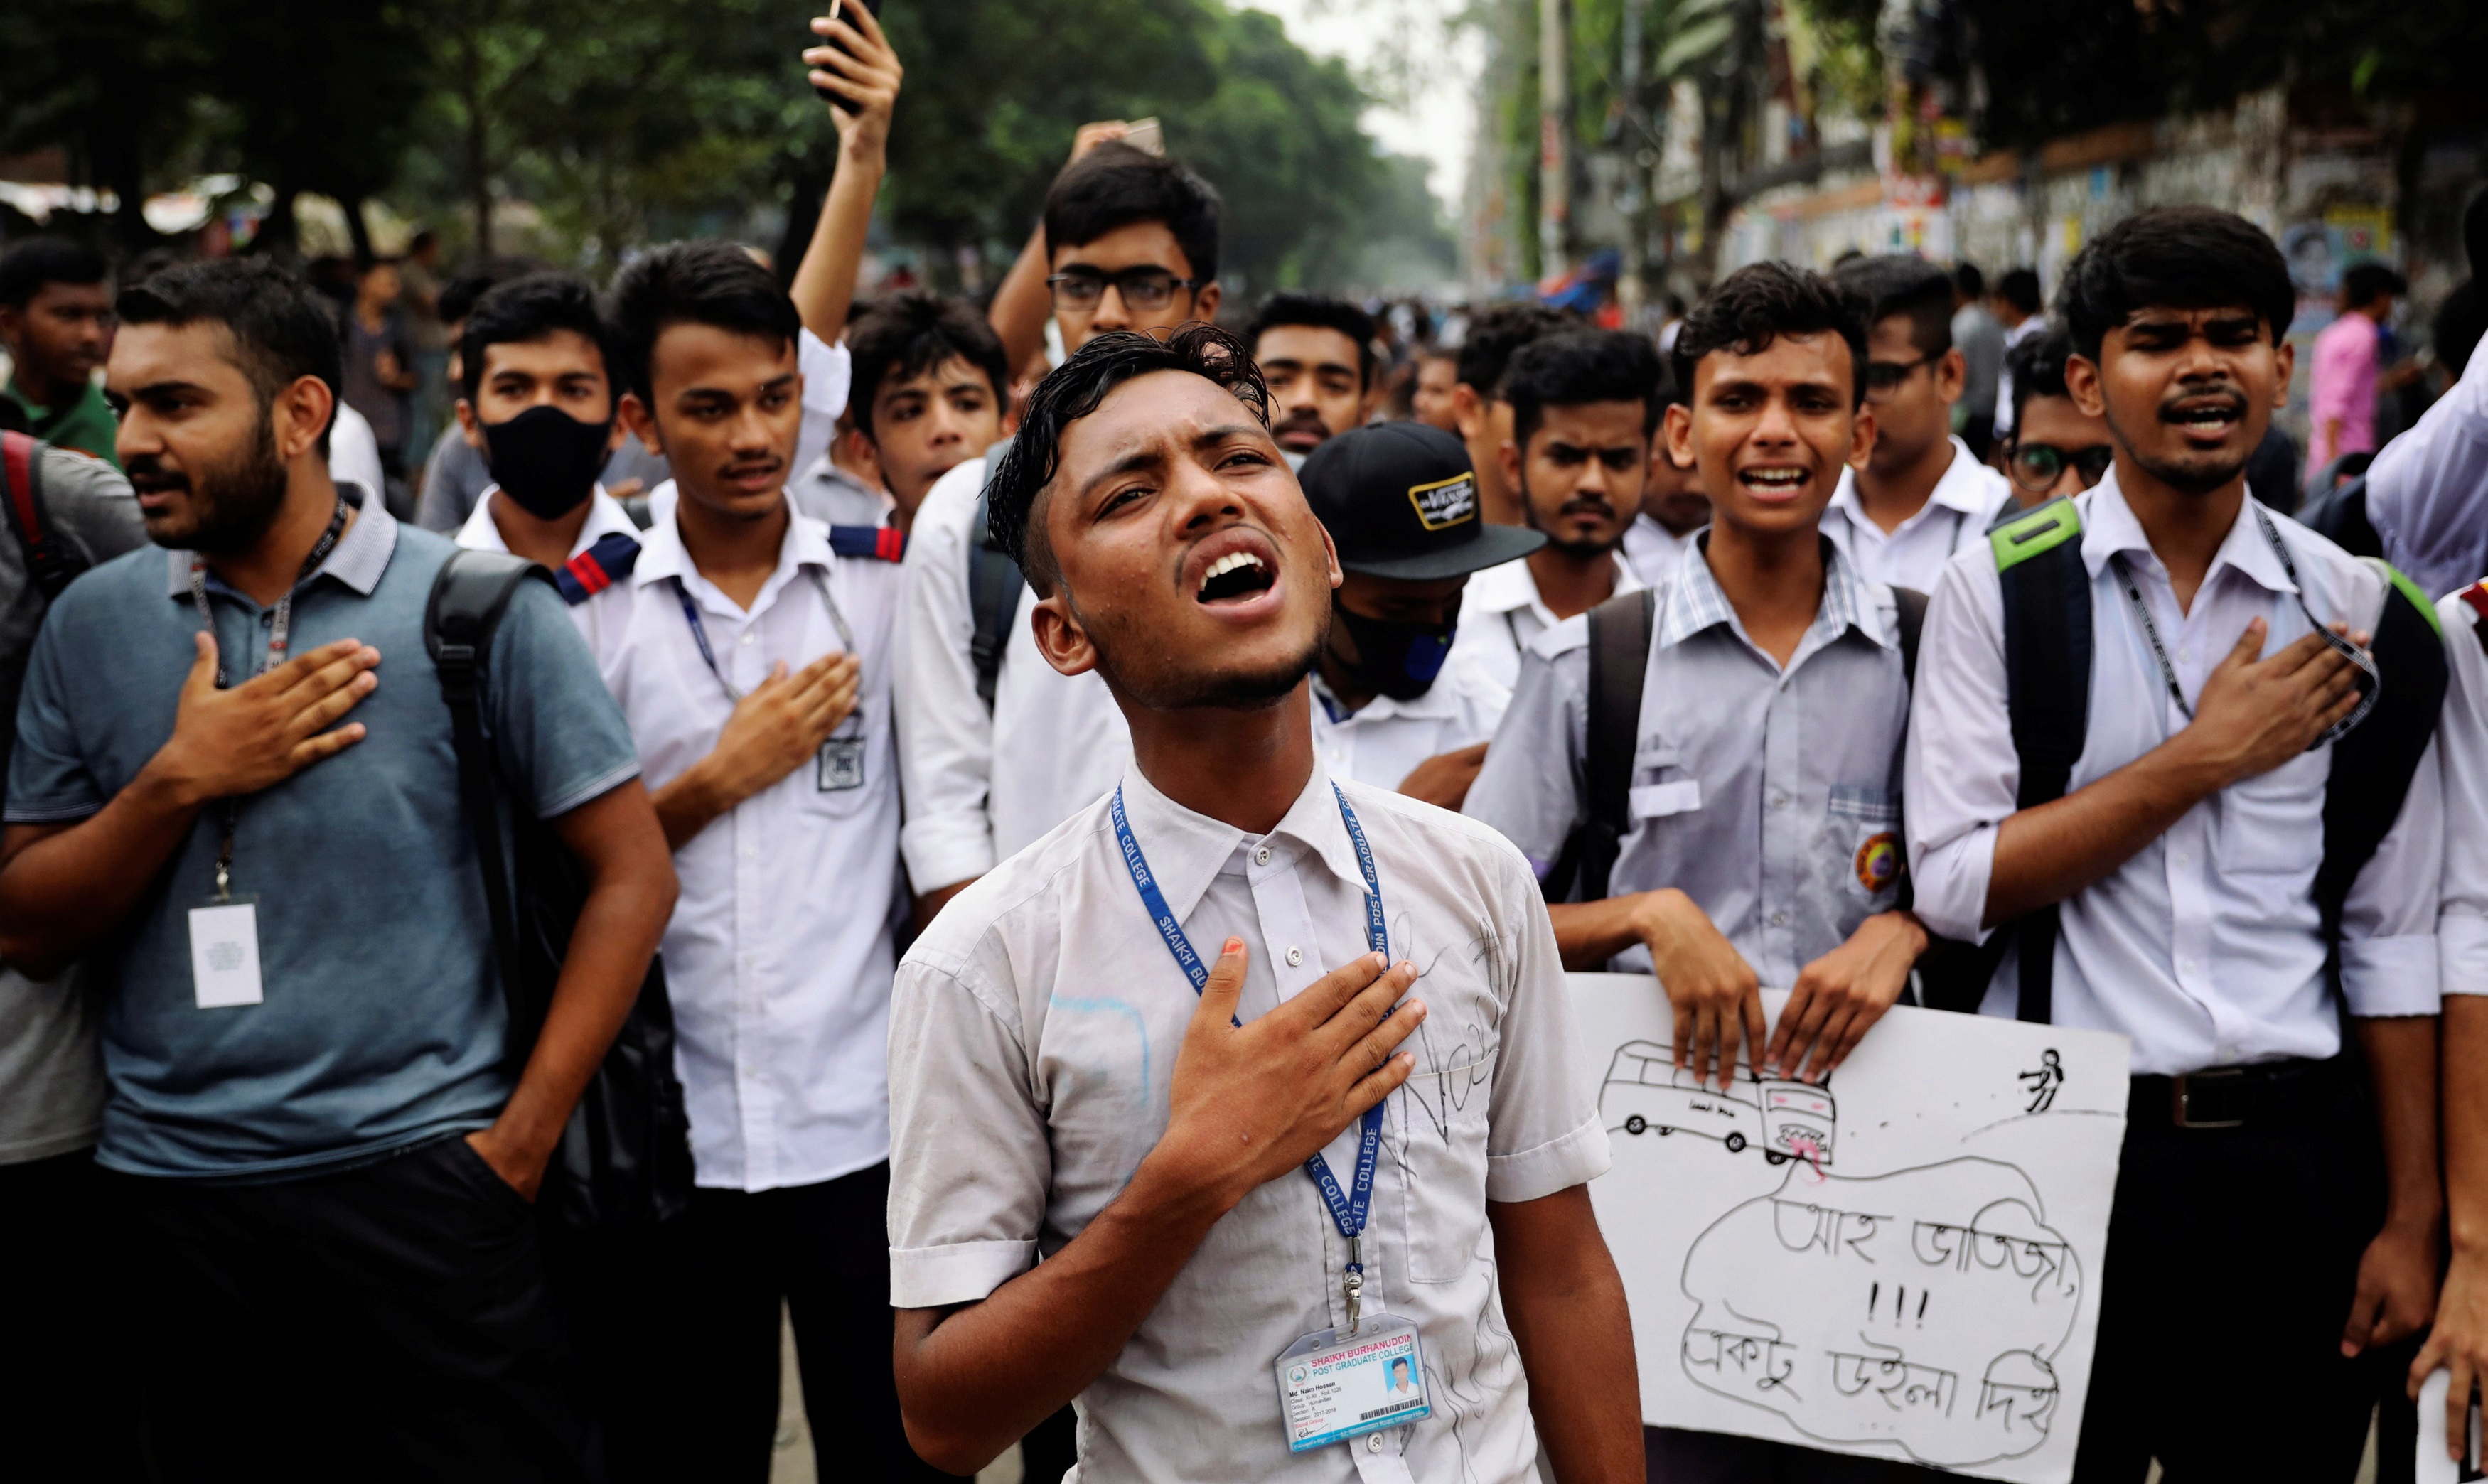 [포토] 방글라데시 학생들, 교통안전 요구하며 시위